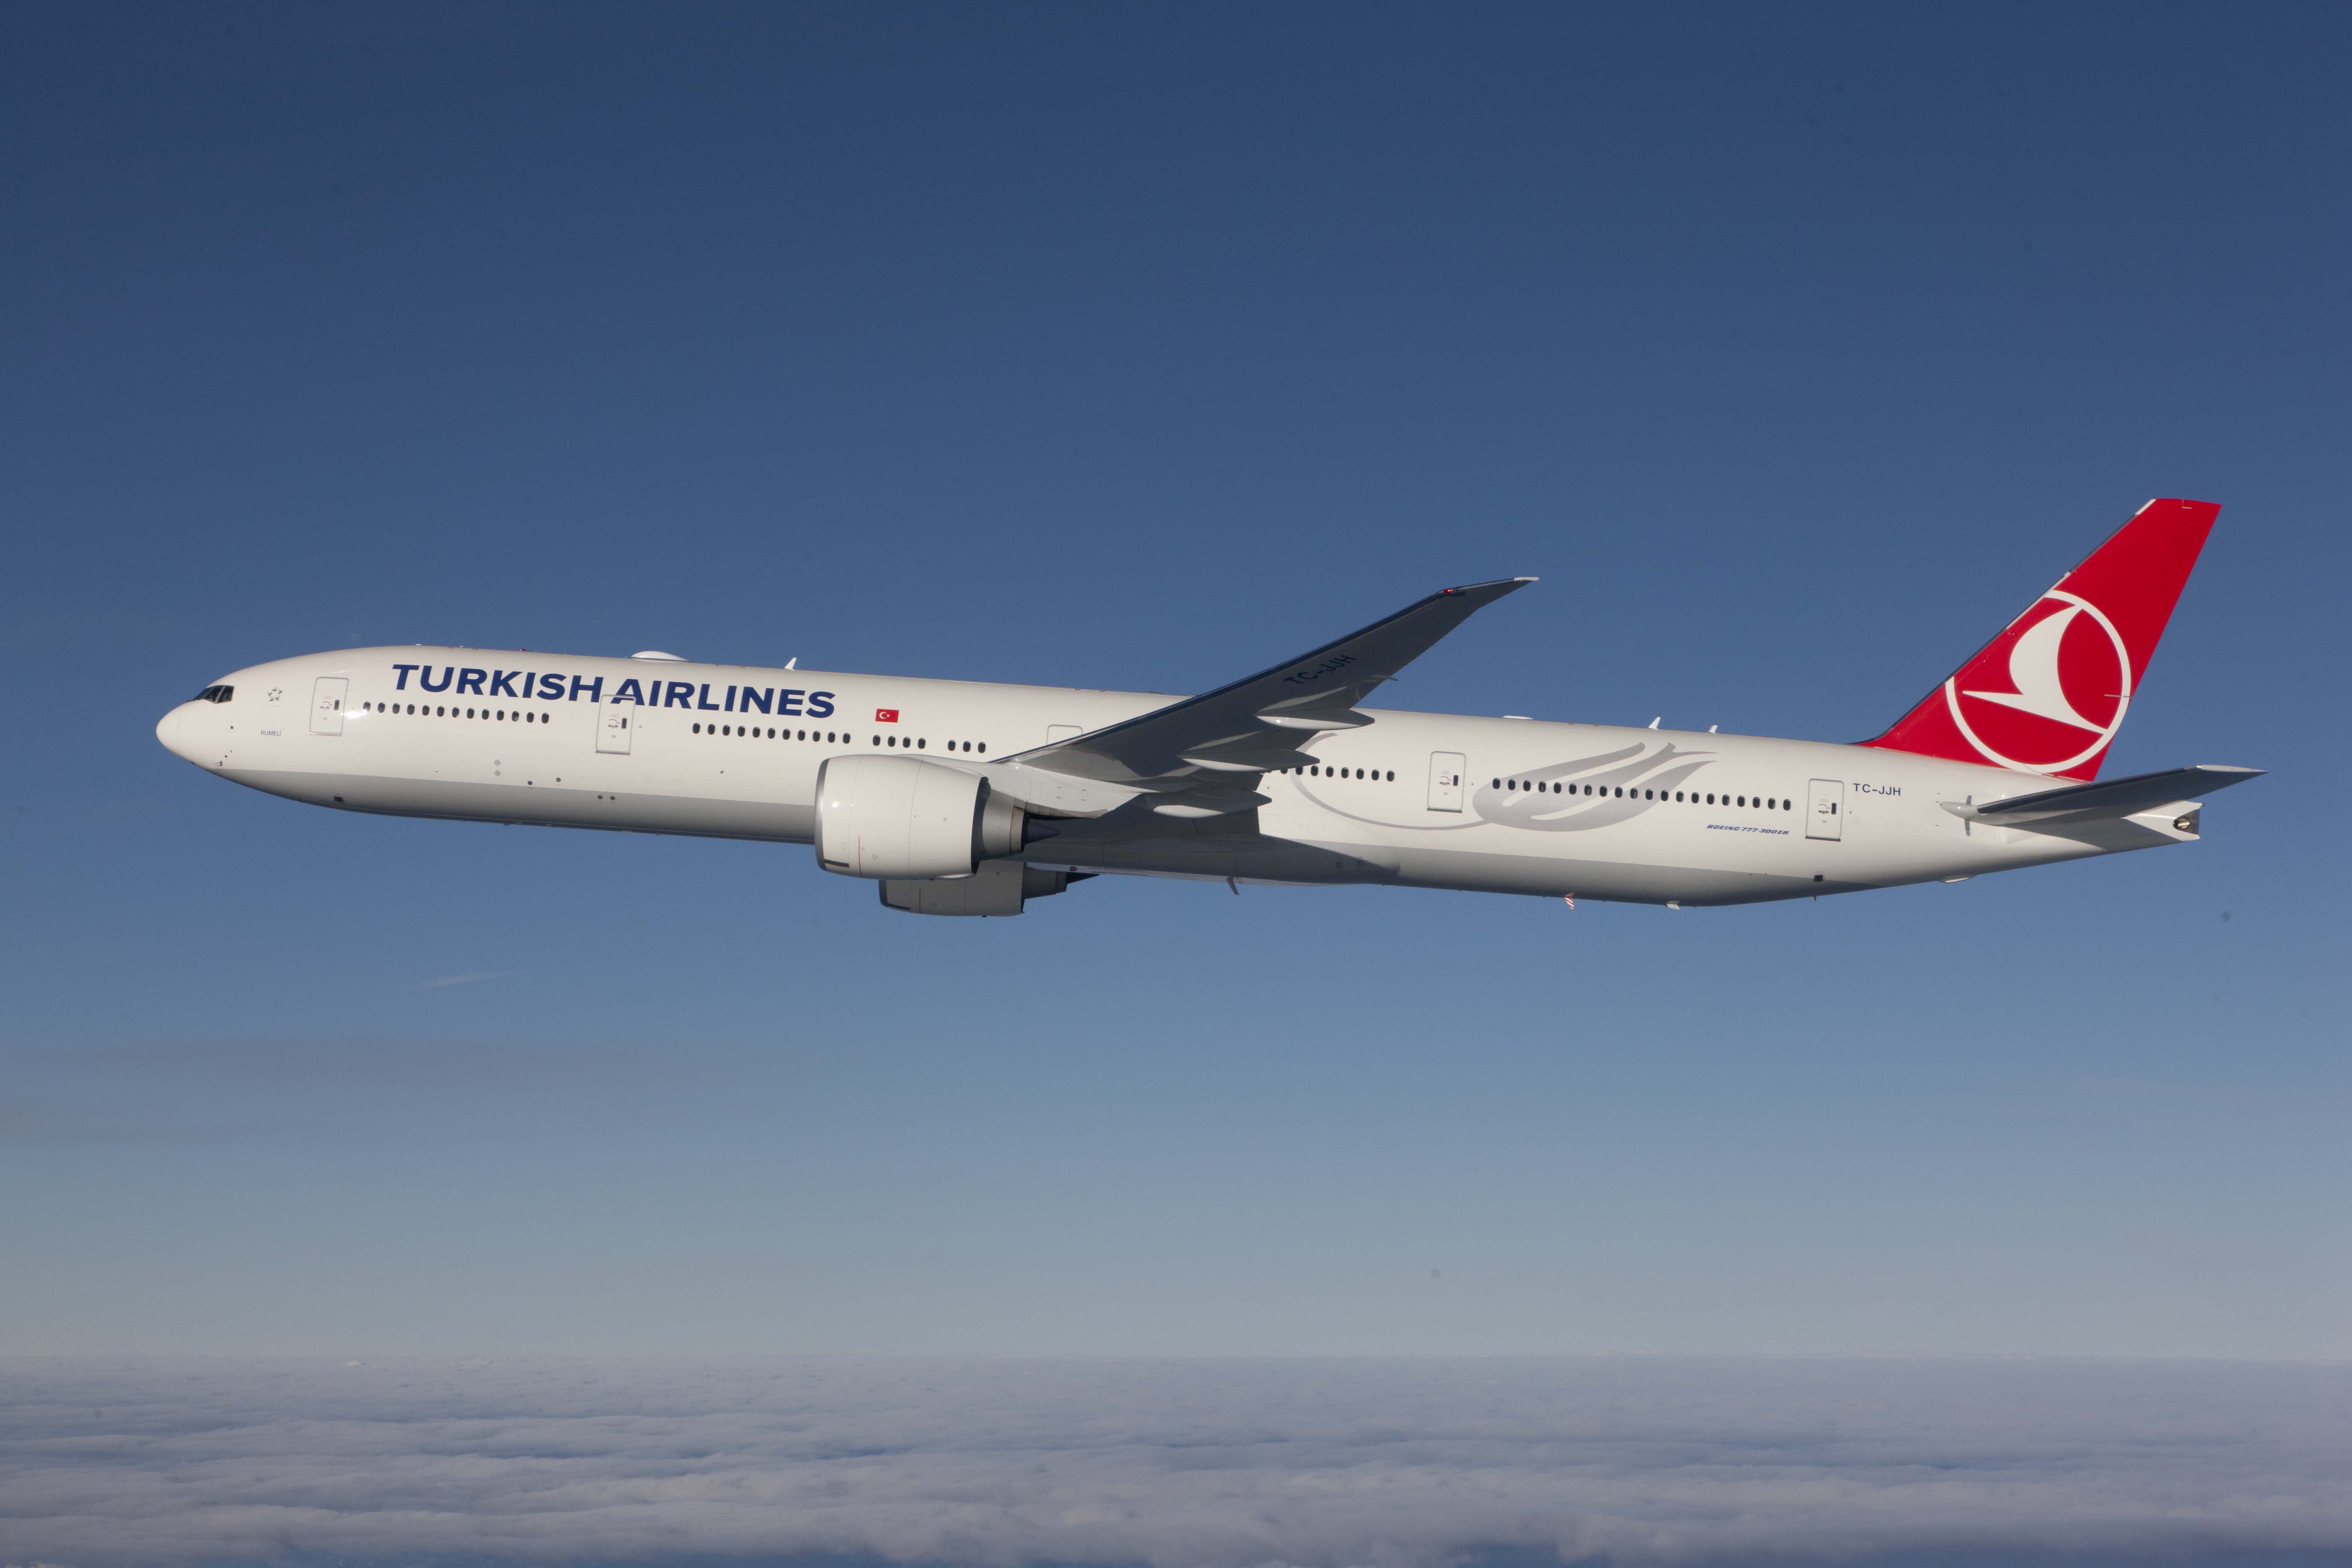 Επείγουσα προσγείωση της Turkish Airlines μετά από απειλή για βόμβα